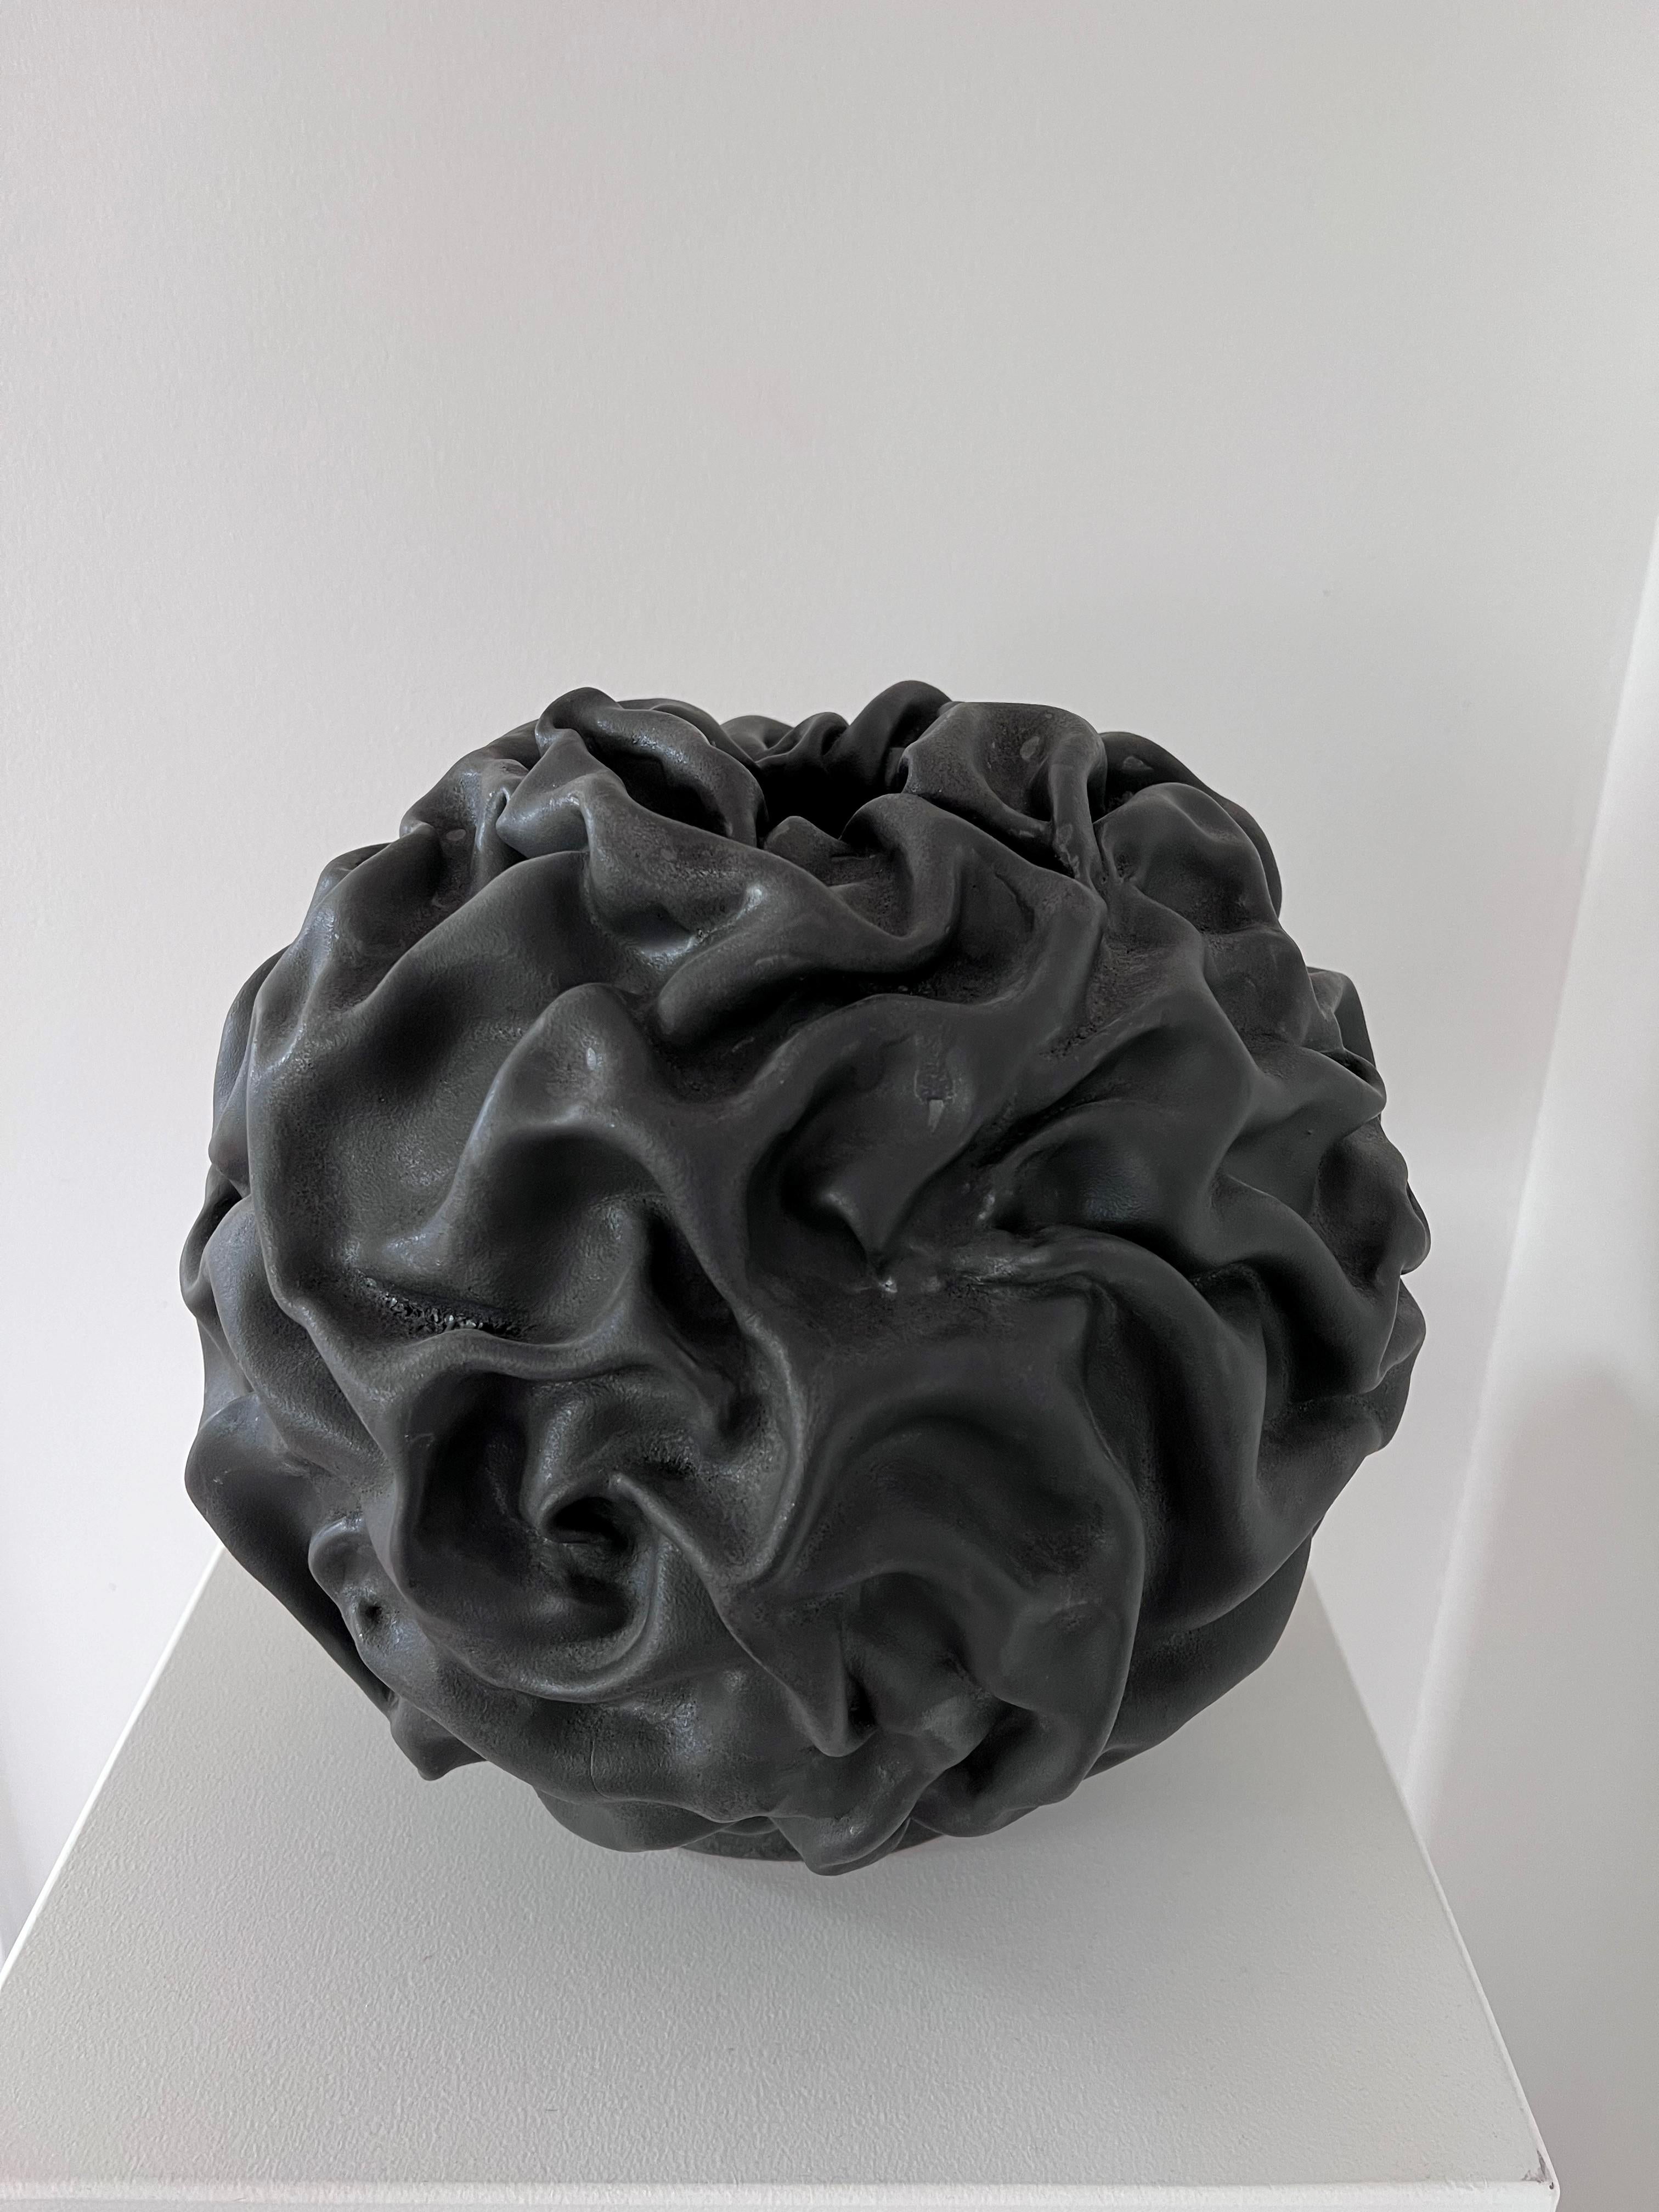 Morchel-Skulptur III von Sophie Rogers
Abmessungen: B 33 x H 31 cm
MATERIALIEN: Keramik, Glasur
Andere Glasurfarben erhältlich.

Inspiriert von den Formen der Natur, stammt der Ursprung aus dem Pilz Morel`s Ausdruck. Ein Spiel mit Schatten und